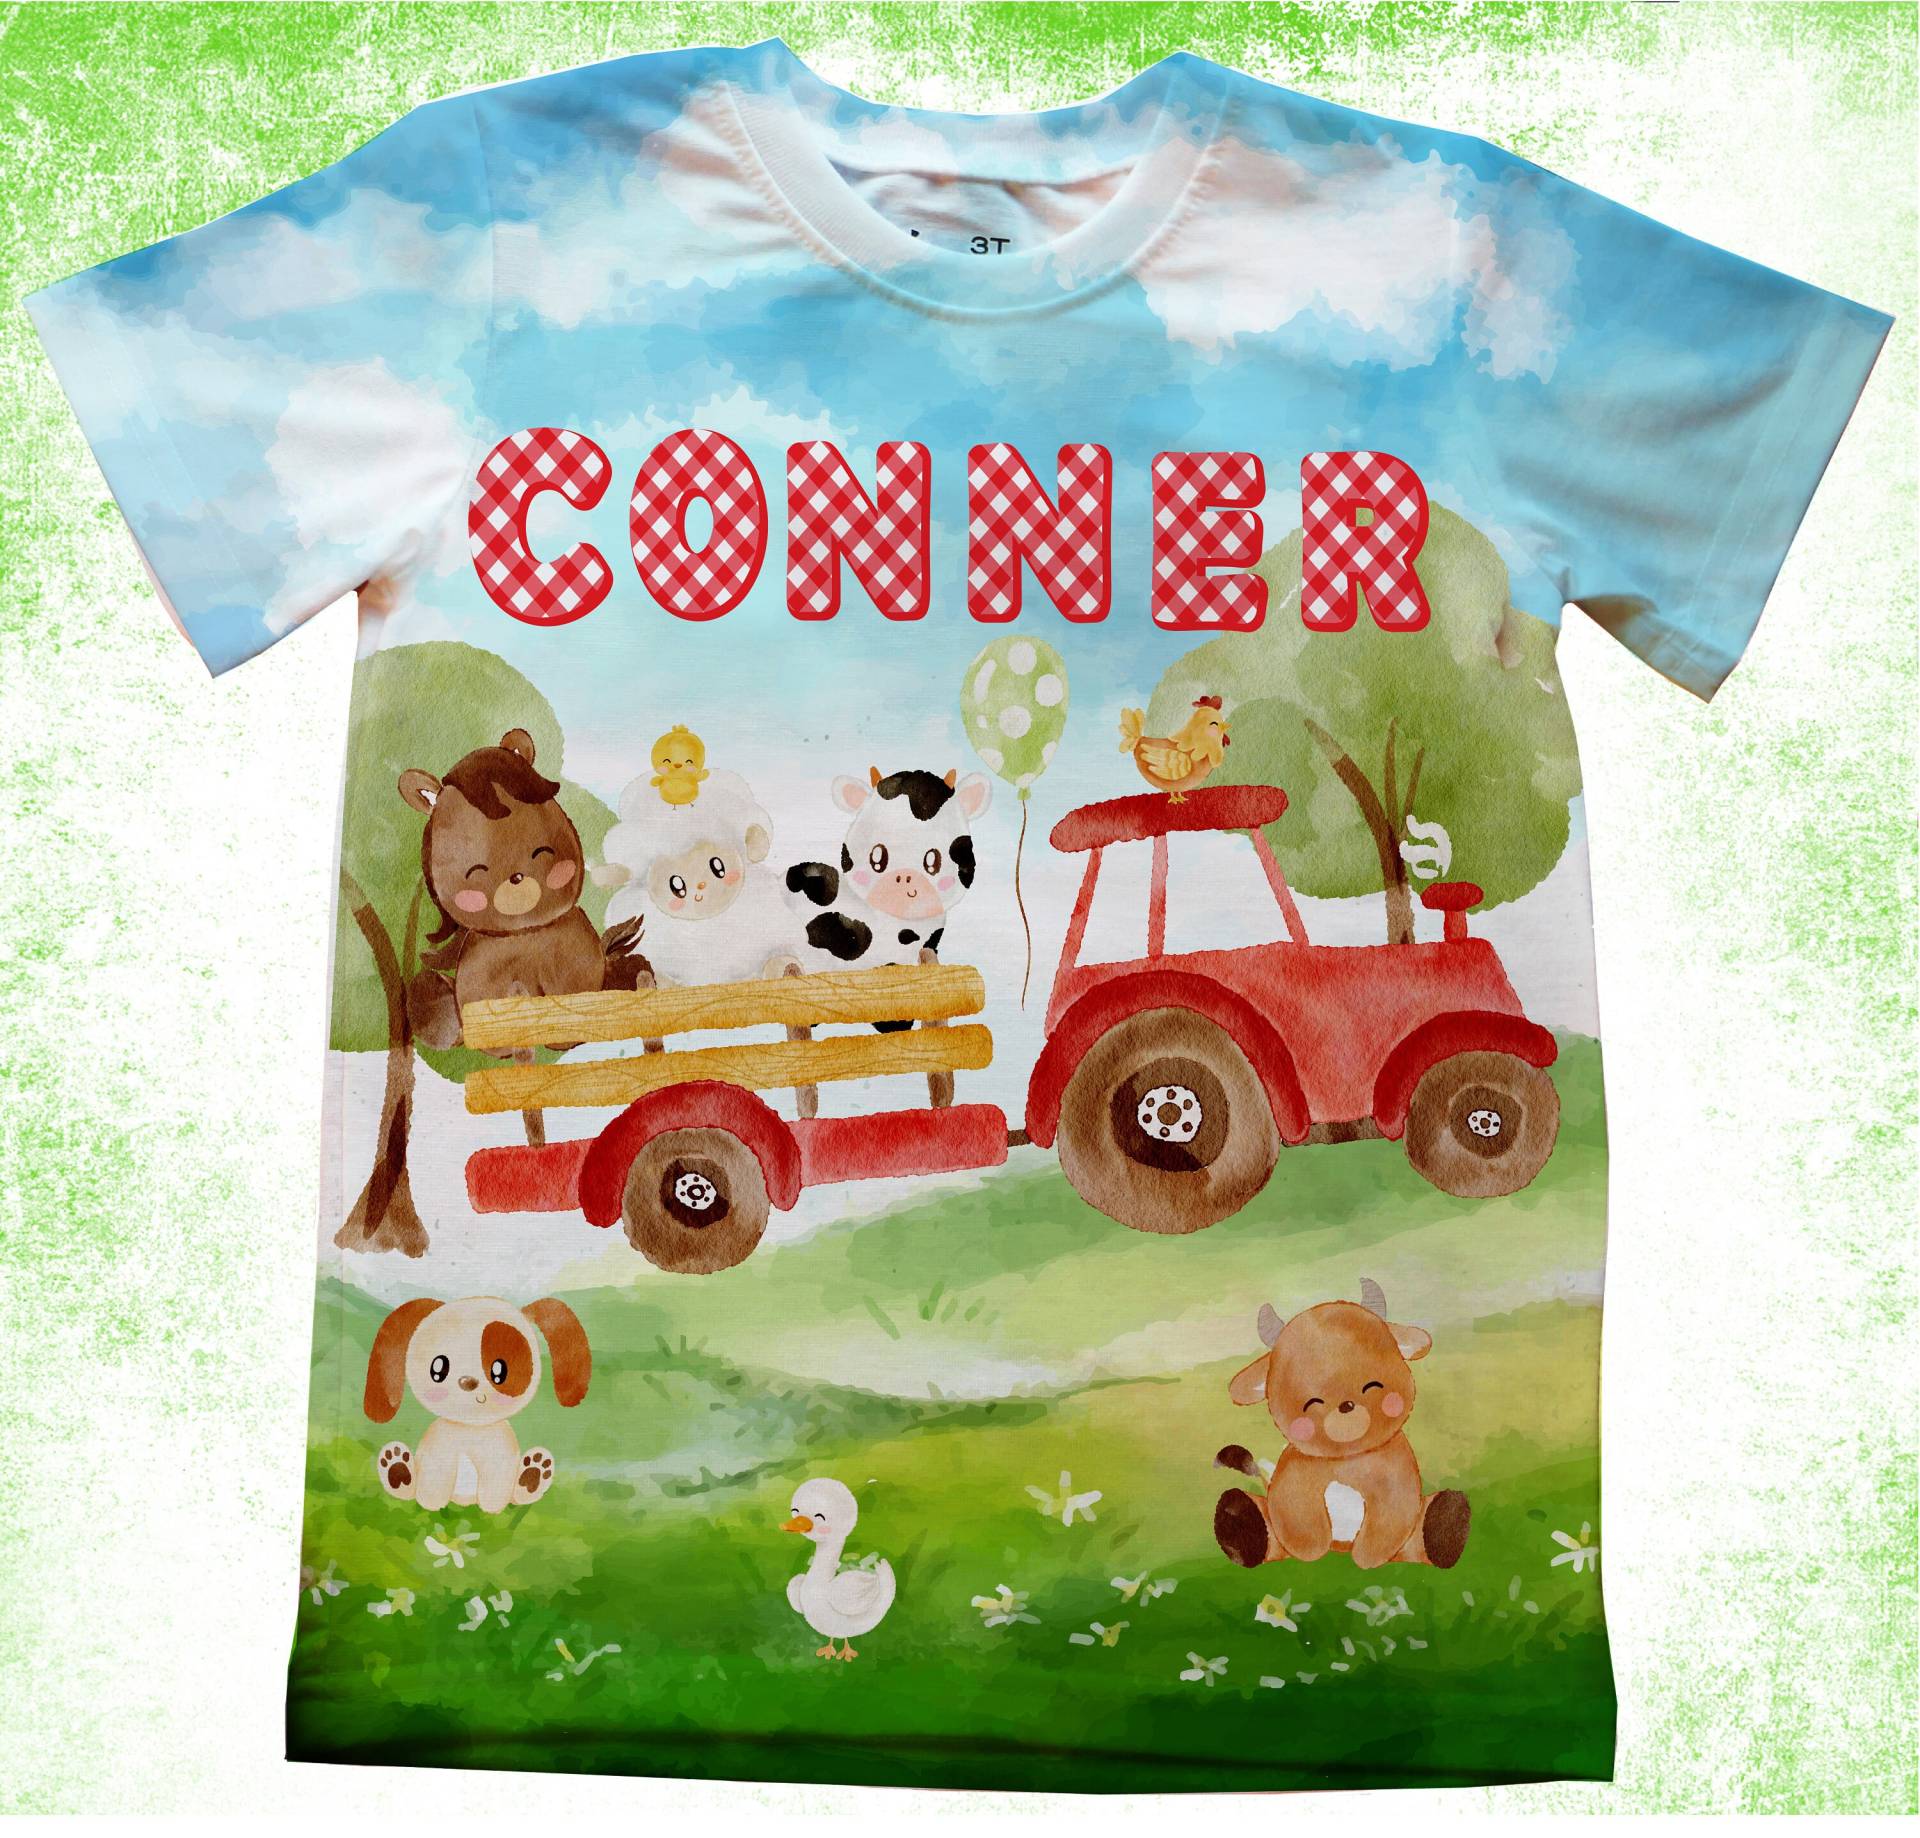 Bauernhof Tier Geburtstag Shirt/Personalisierte Farm Truck Party T-Shirts/Kindergeburtstag Shirts/Onesie, Jugend® Und Erwachsene Shirts/ Barnyard von PurpleRoseHouse